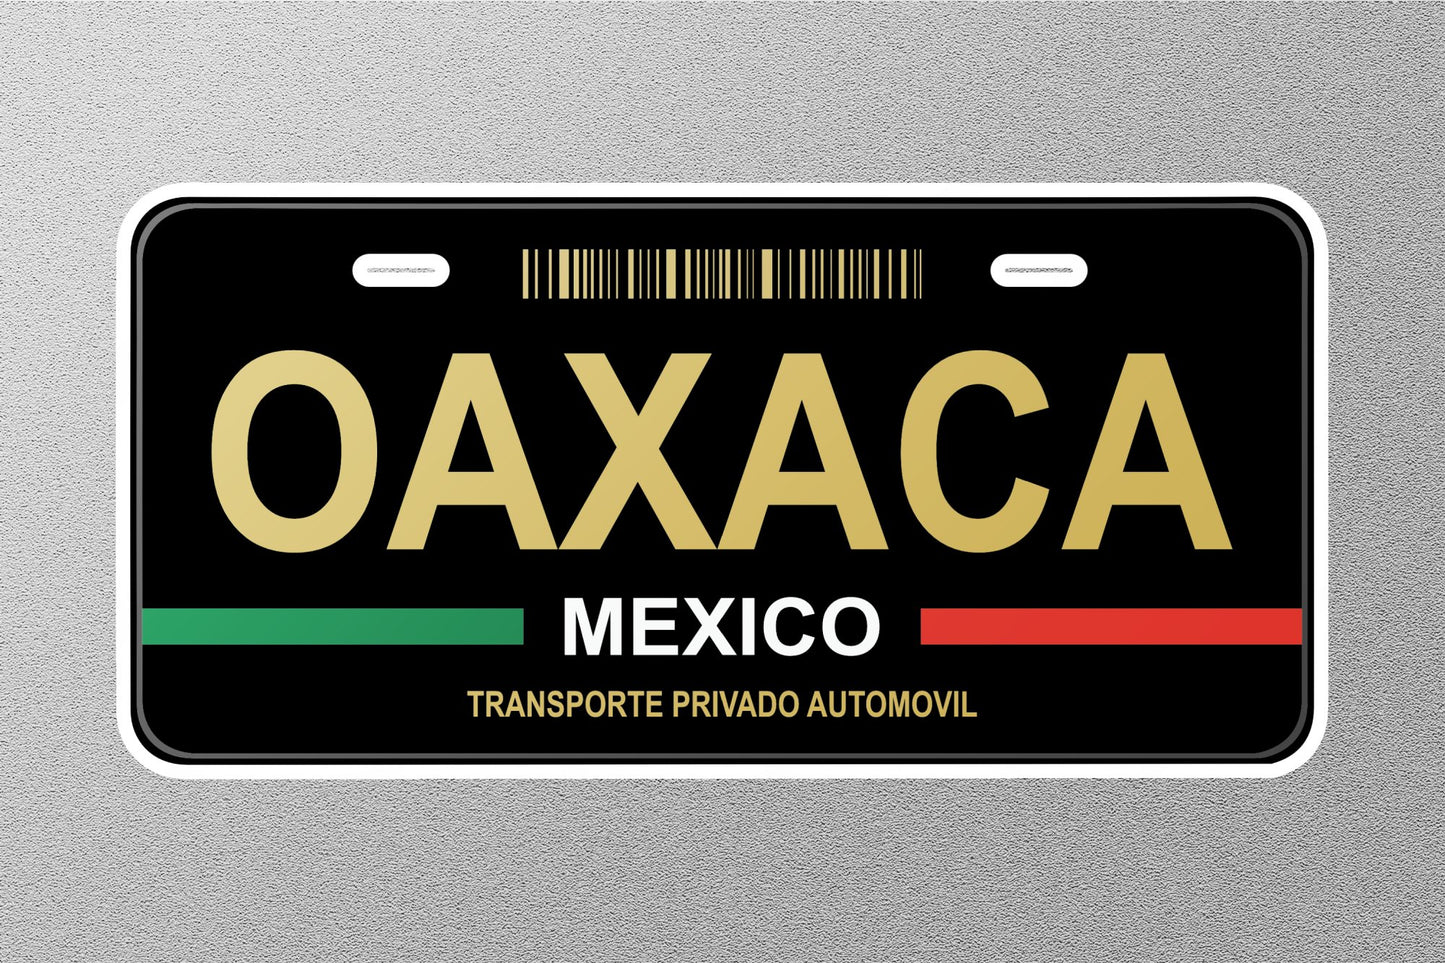 Oaxaca Mexico License Plate Sticker